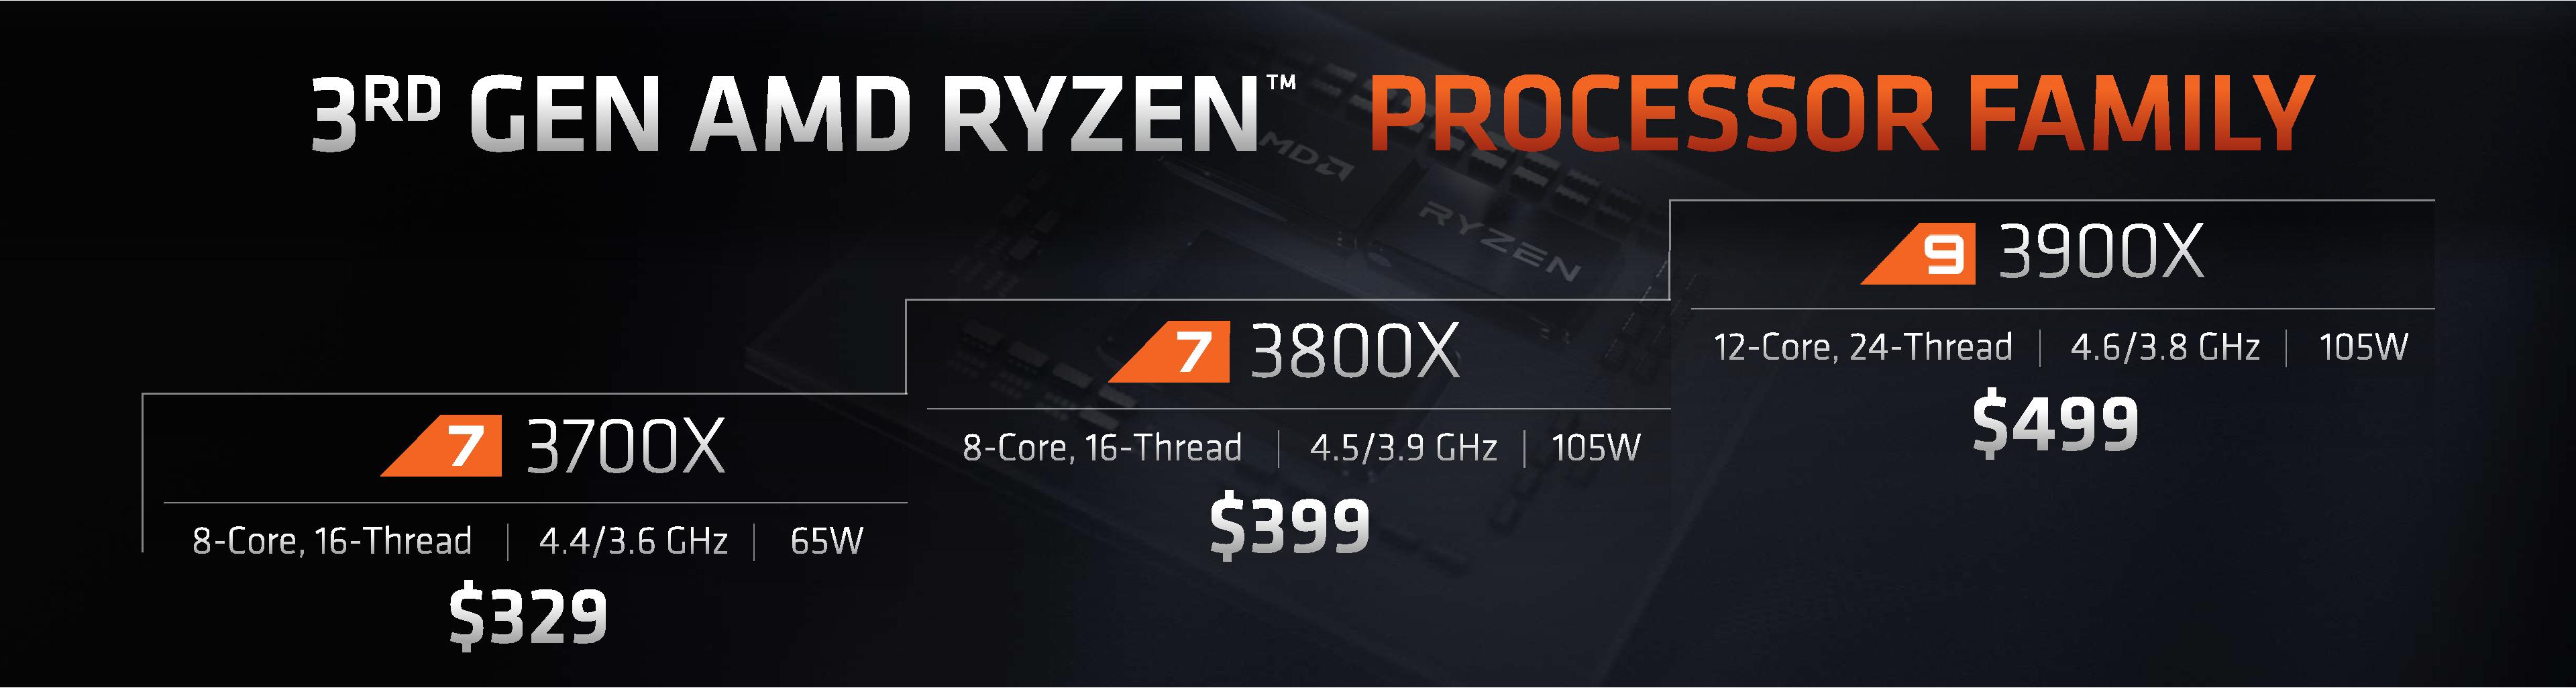 AMD Ryzen 7 3700X + Ryzen 9 3900X Offer Incredible Linux